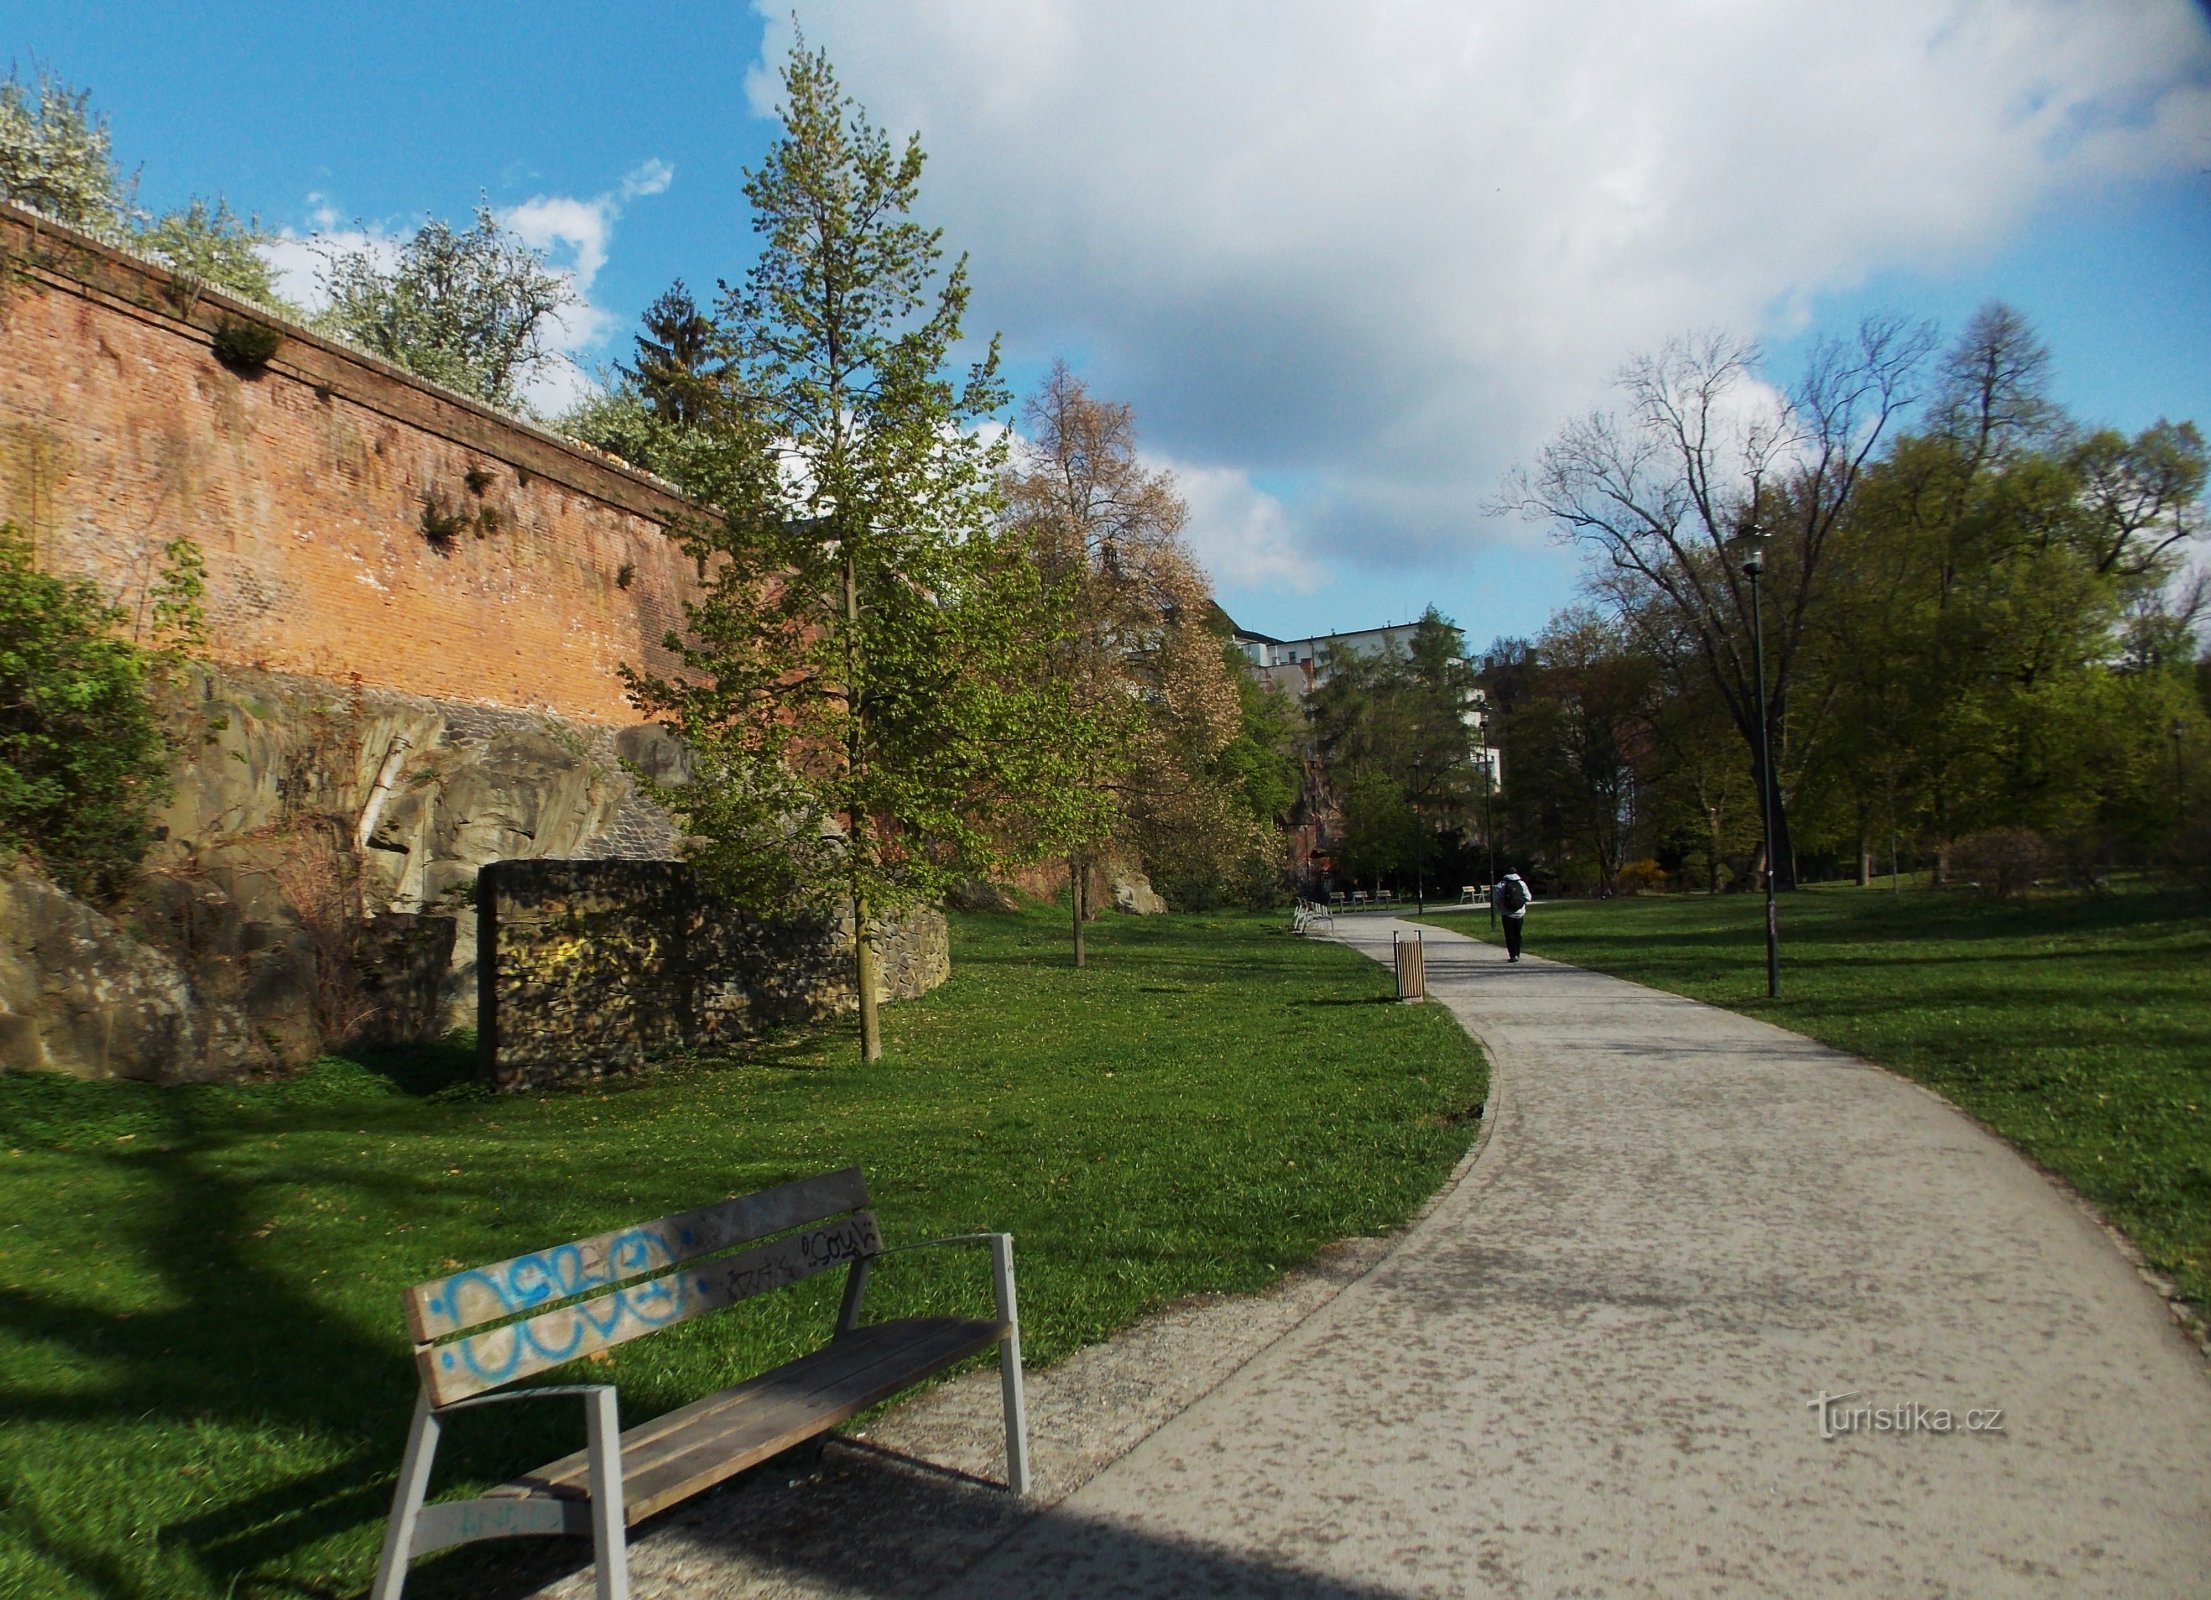 Pomladni sprehod v Olomouc